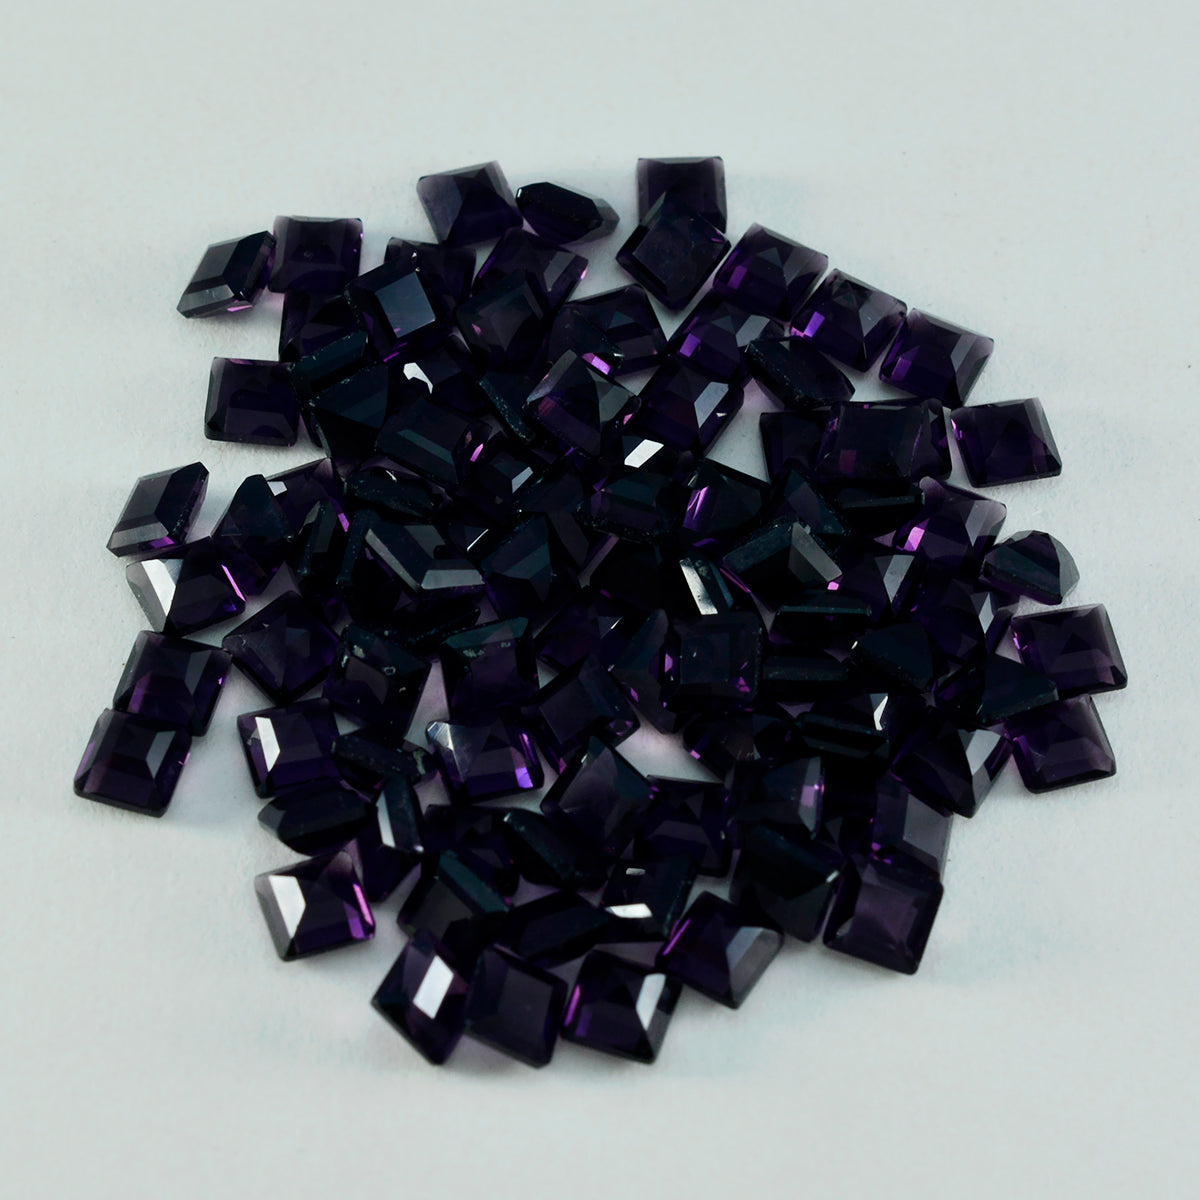 Riyogems 1 pièce d'améthyste violette cz à facettes 5x5mm de forme carrée, gemme de merveilleuse qualité